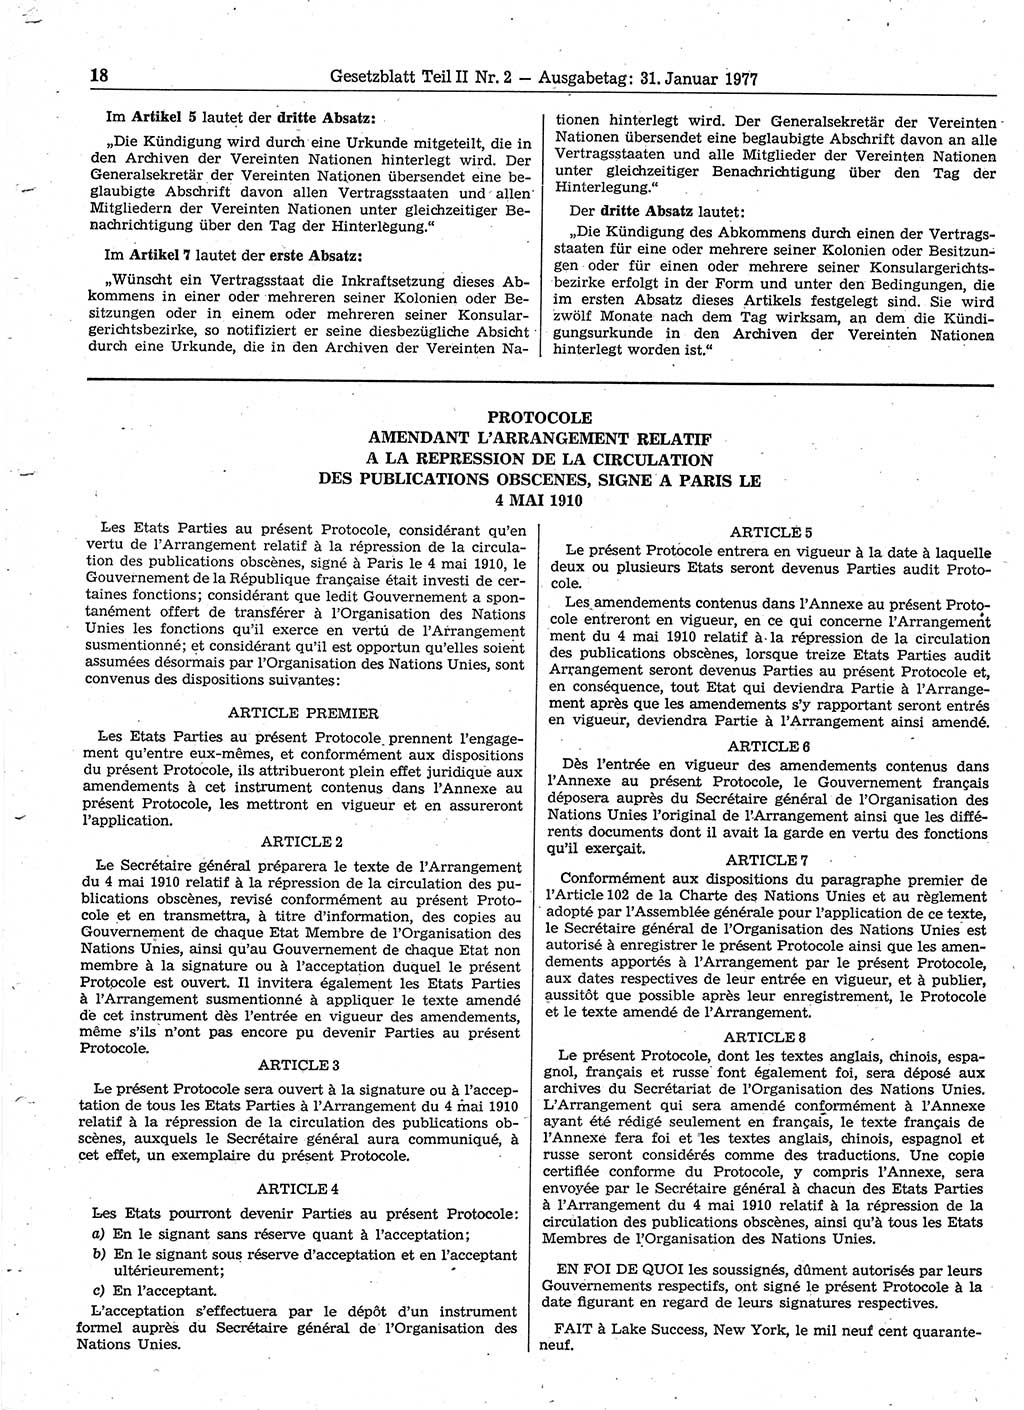 Gesetzblatt (GBl.) der Deutschen Demokratischen Republik (DDR) Teil ⅠⅠ 1977, Seite 18 (GBl. DDR ⅠⅠ 1977, S. 18)